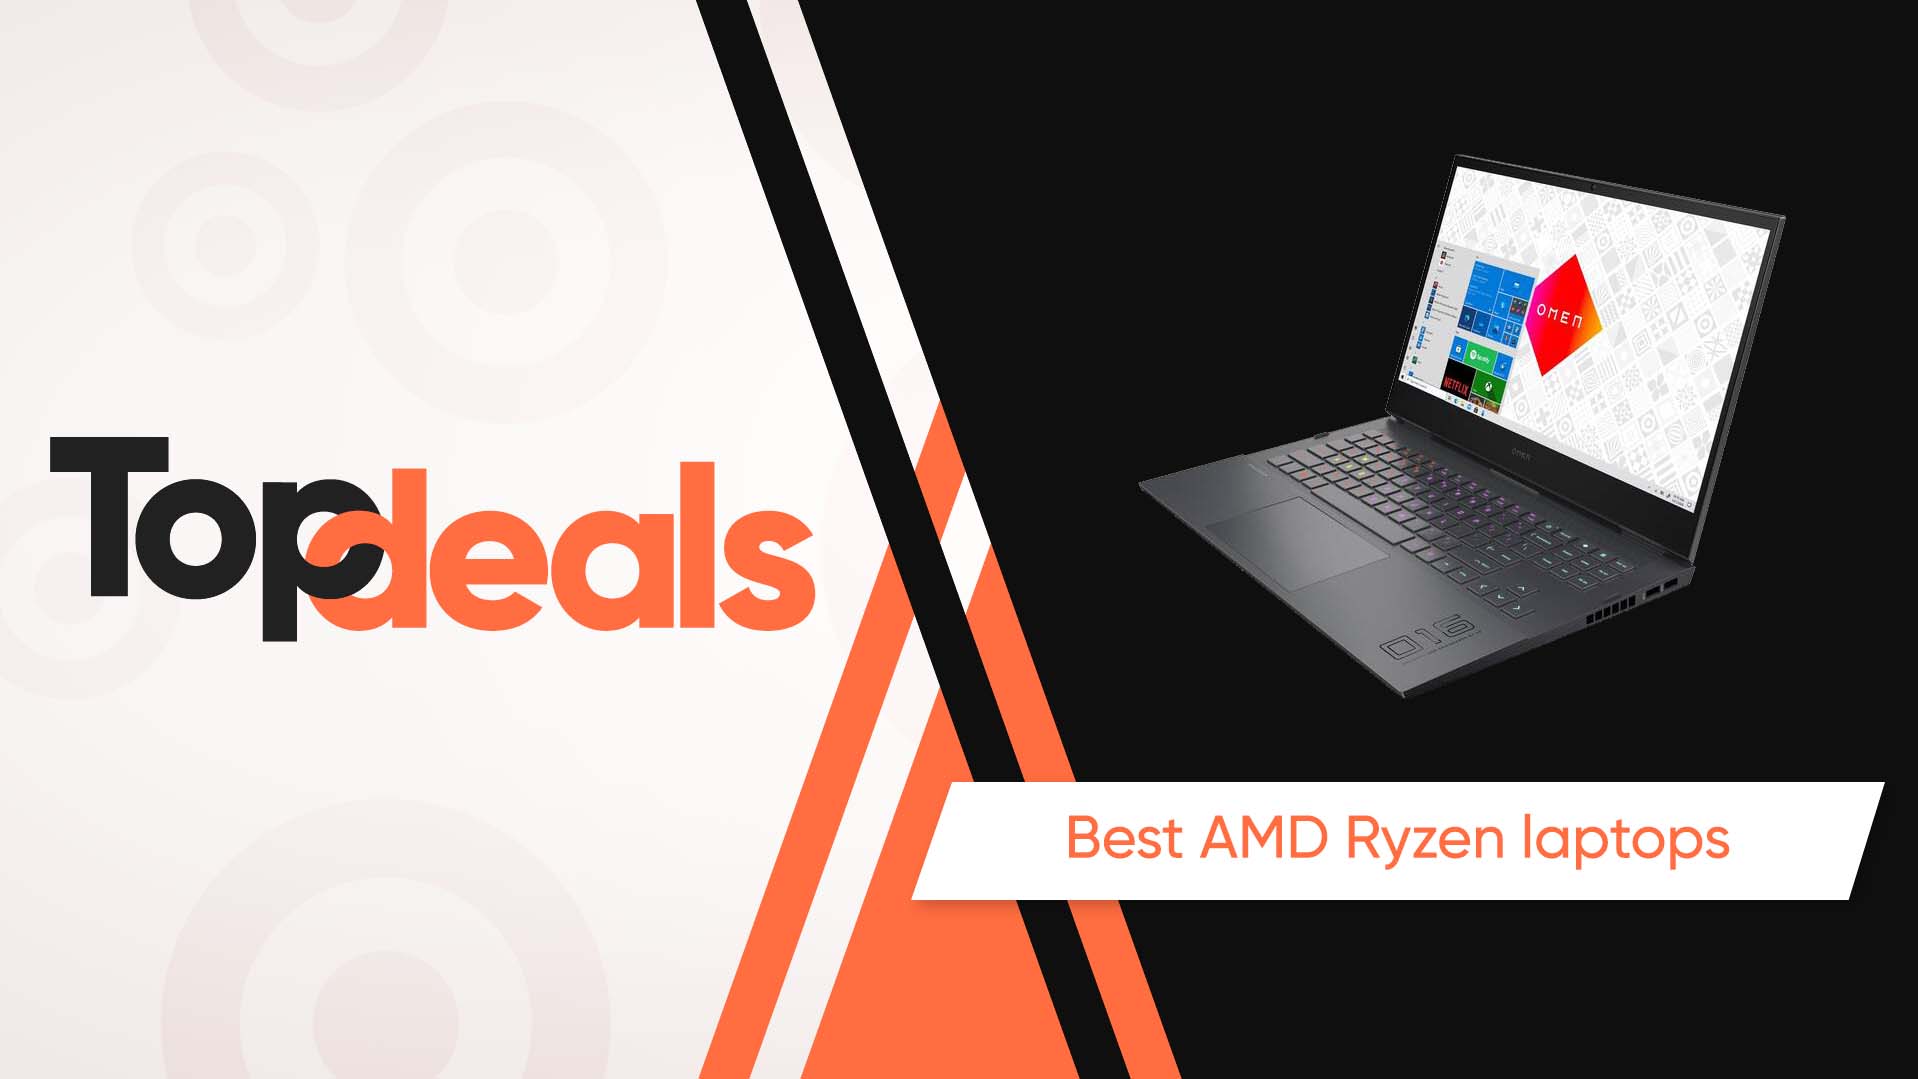 Best AMD Ryzen laptops